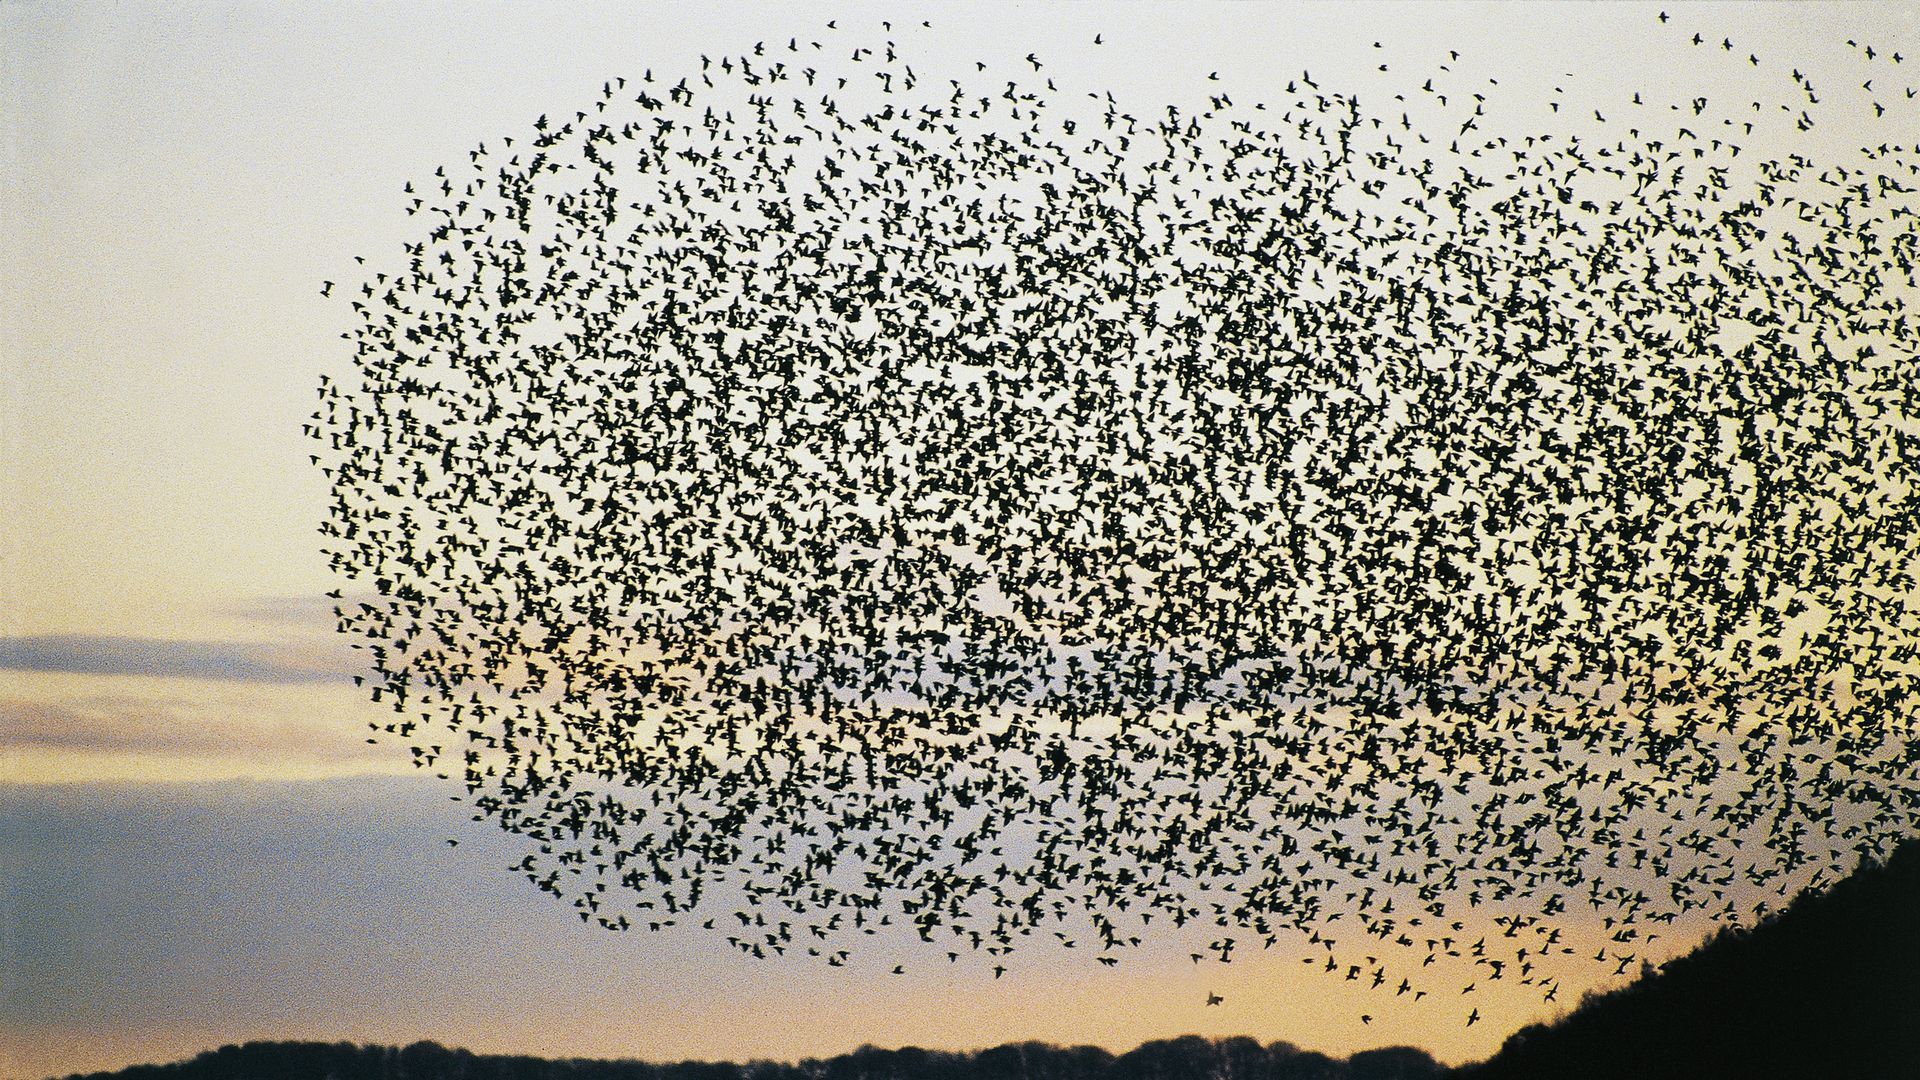 Flock of birds swarming together